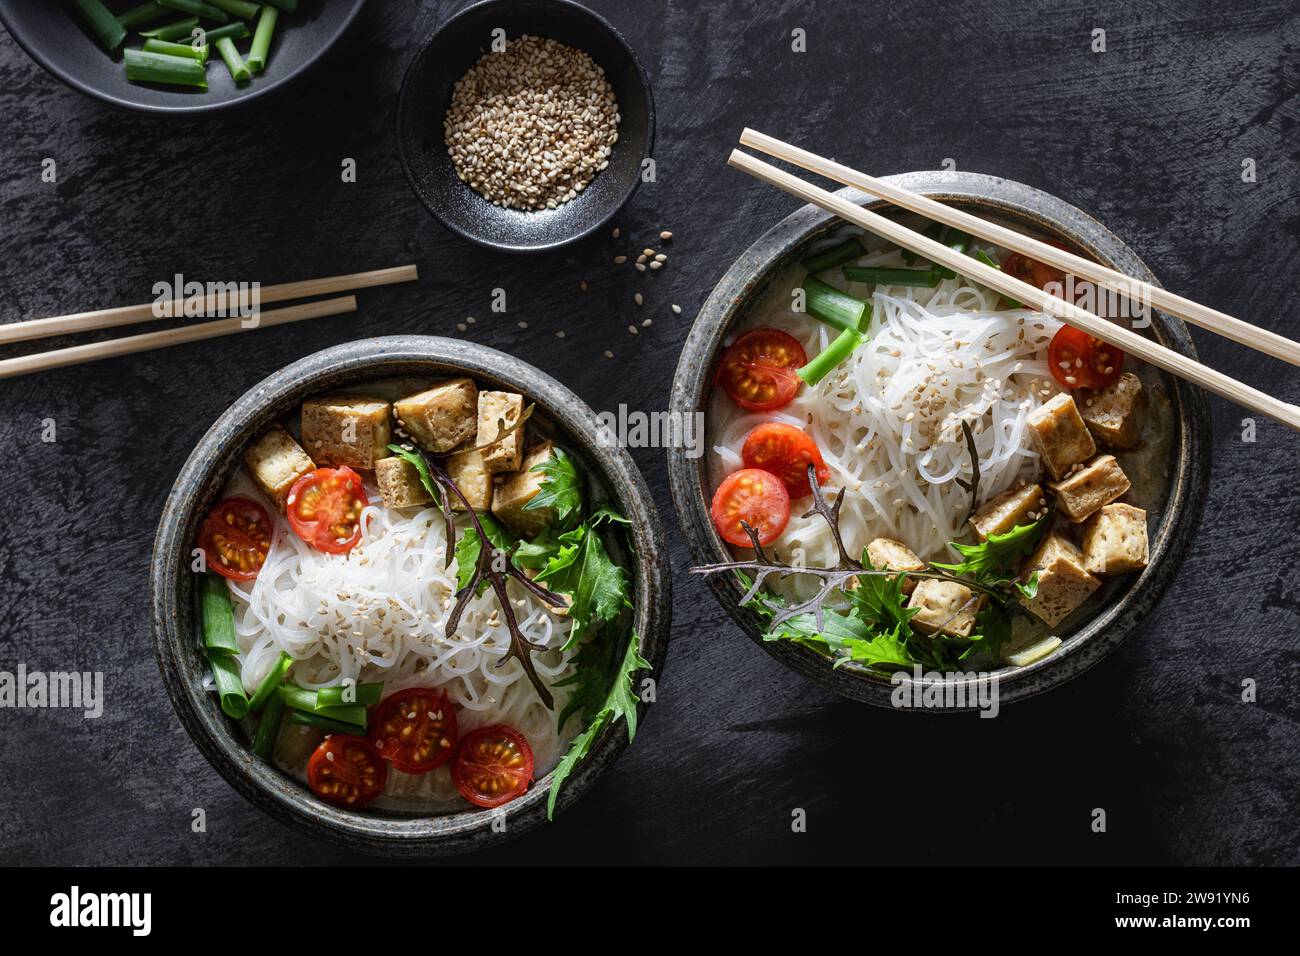 Schüsseln mit veganer Tom-Kha-Kai-Suppe mit Tofu, Tomaten, Salat, Reisnudeln, Sesamsamen und Zwiebeln Stockfoto